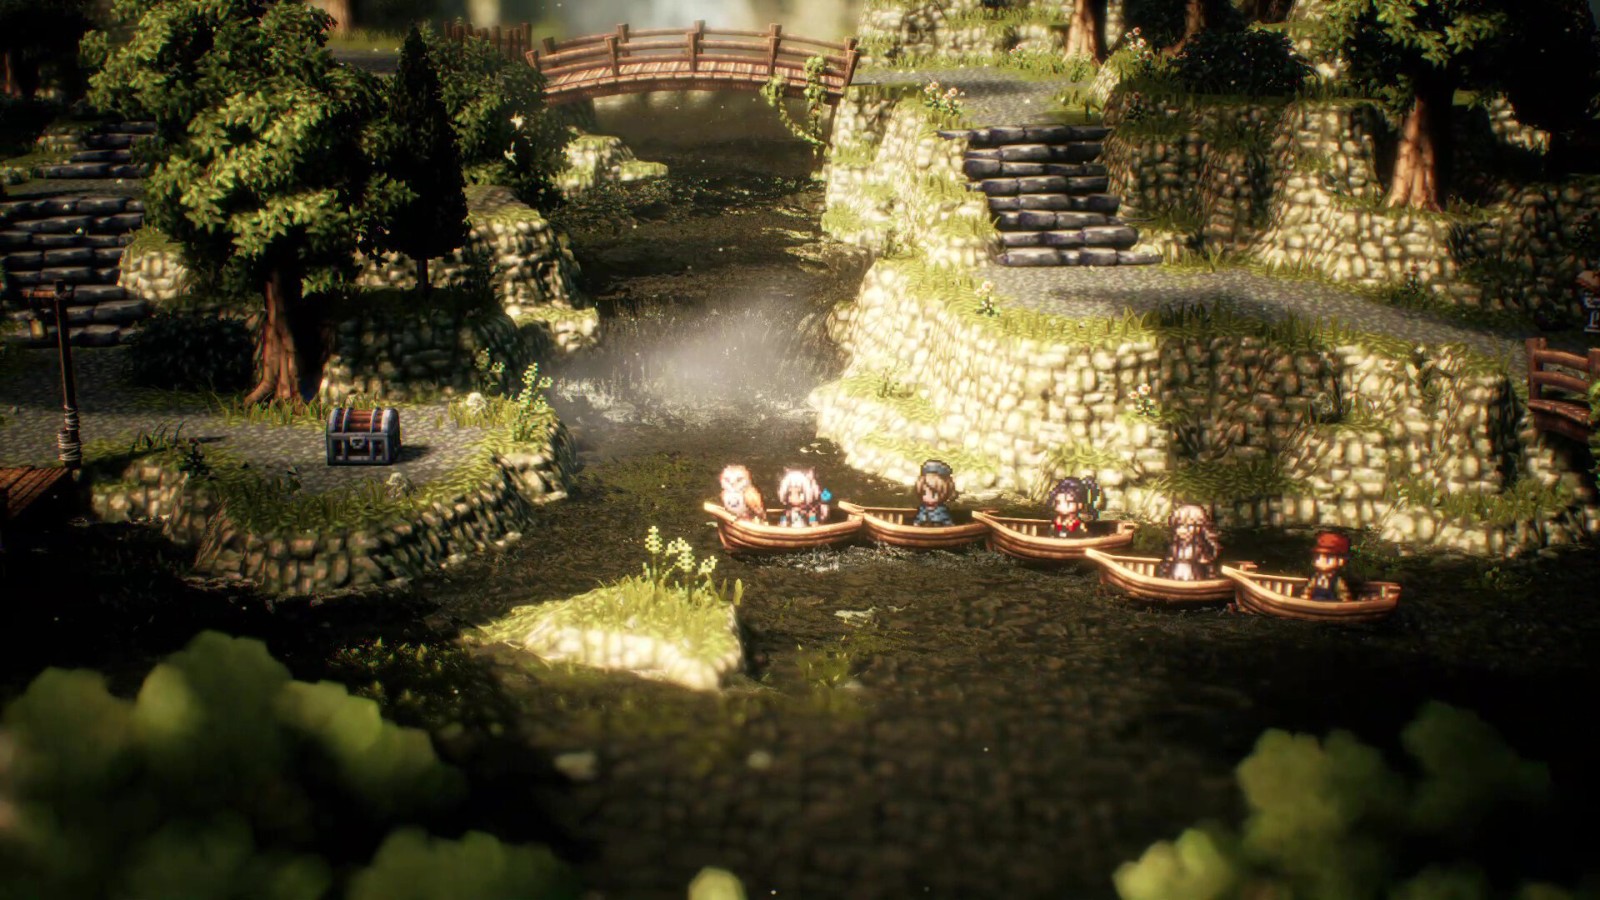 《歧路旅人2》上架Steam 售价379元 明年2月发售